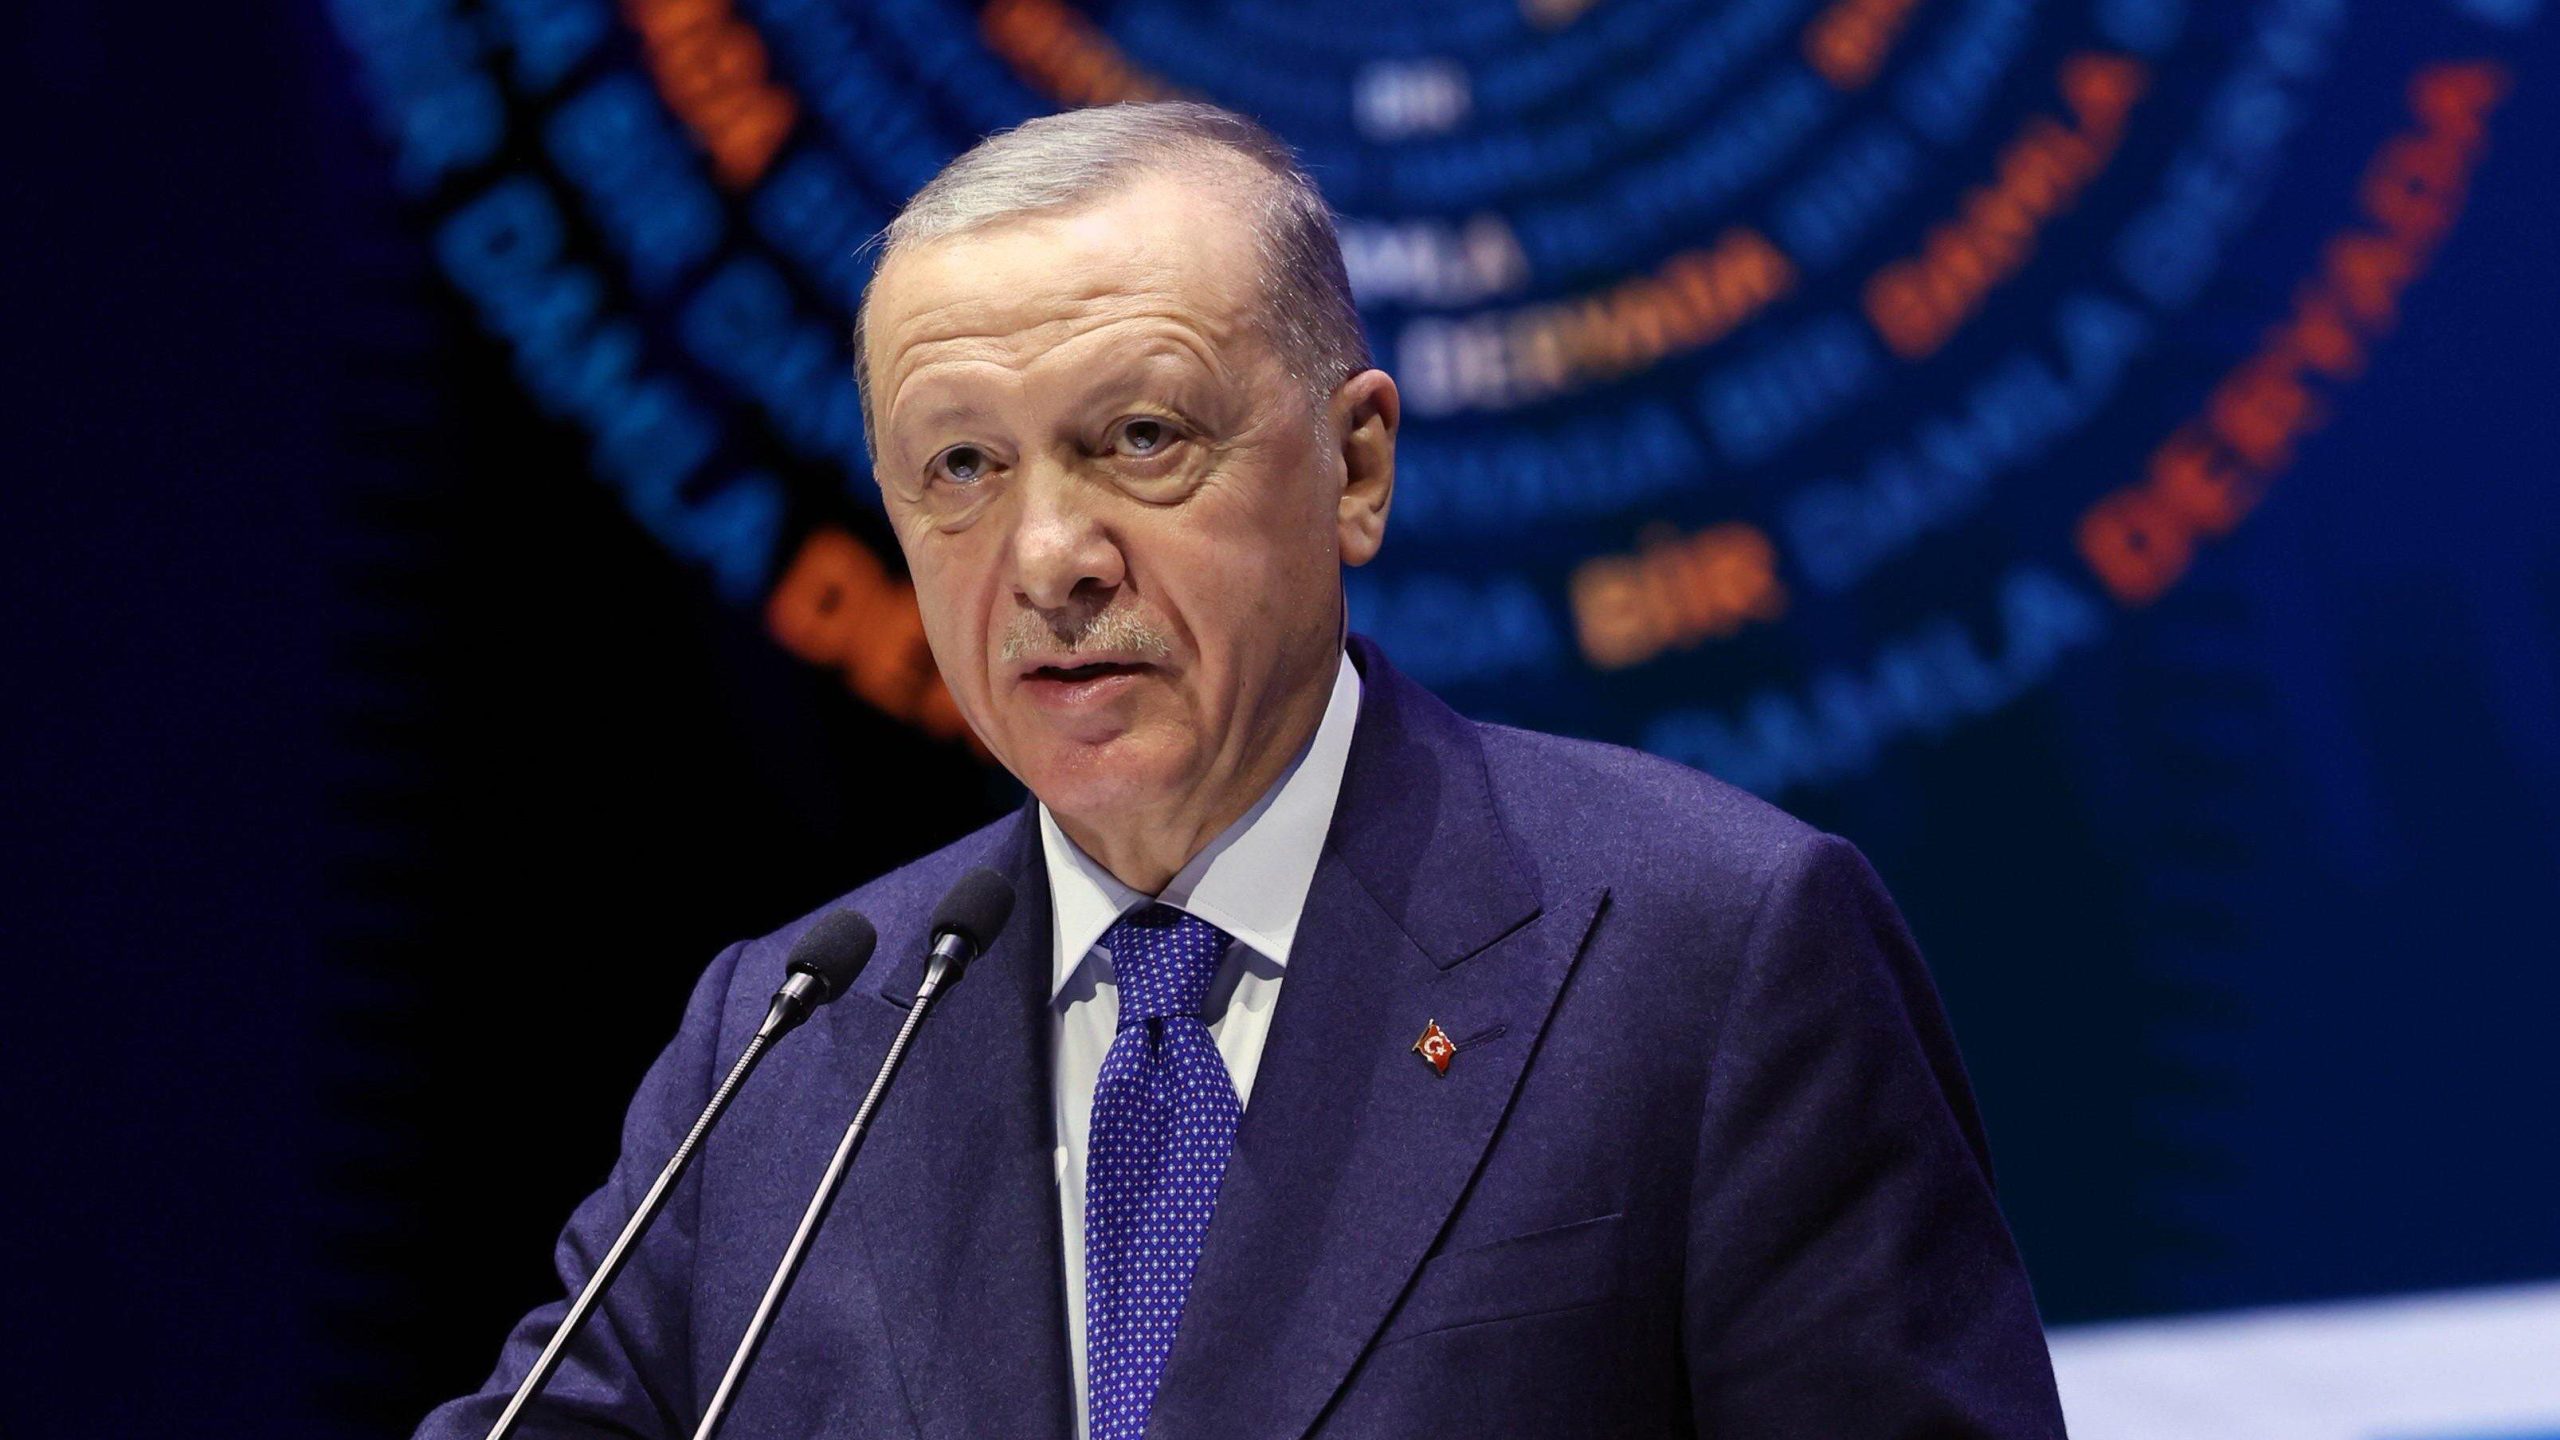 Erdoğan voorziet dat er een einde komt aan de bloedbaden in Gaza naarmate de islamitische wereld groeit